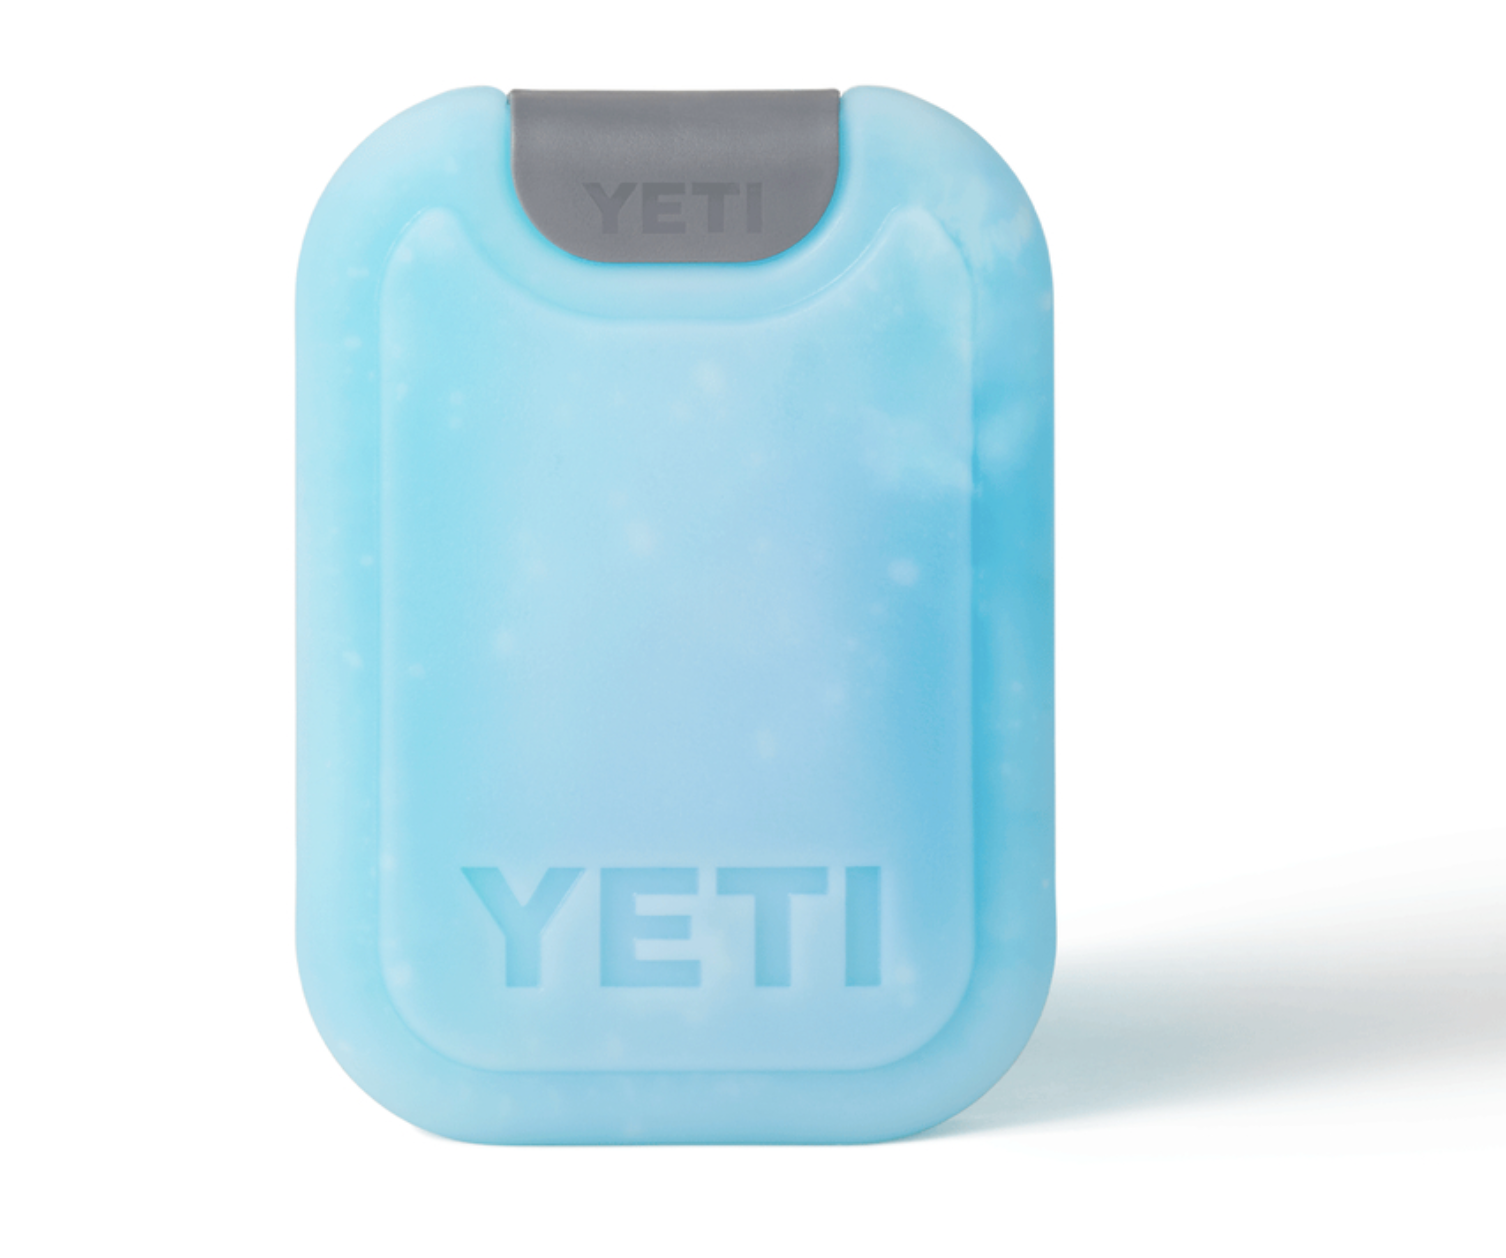 Yeti Thin Ice - Large